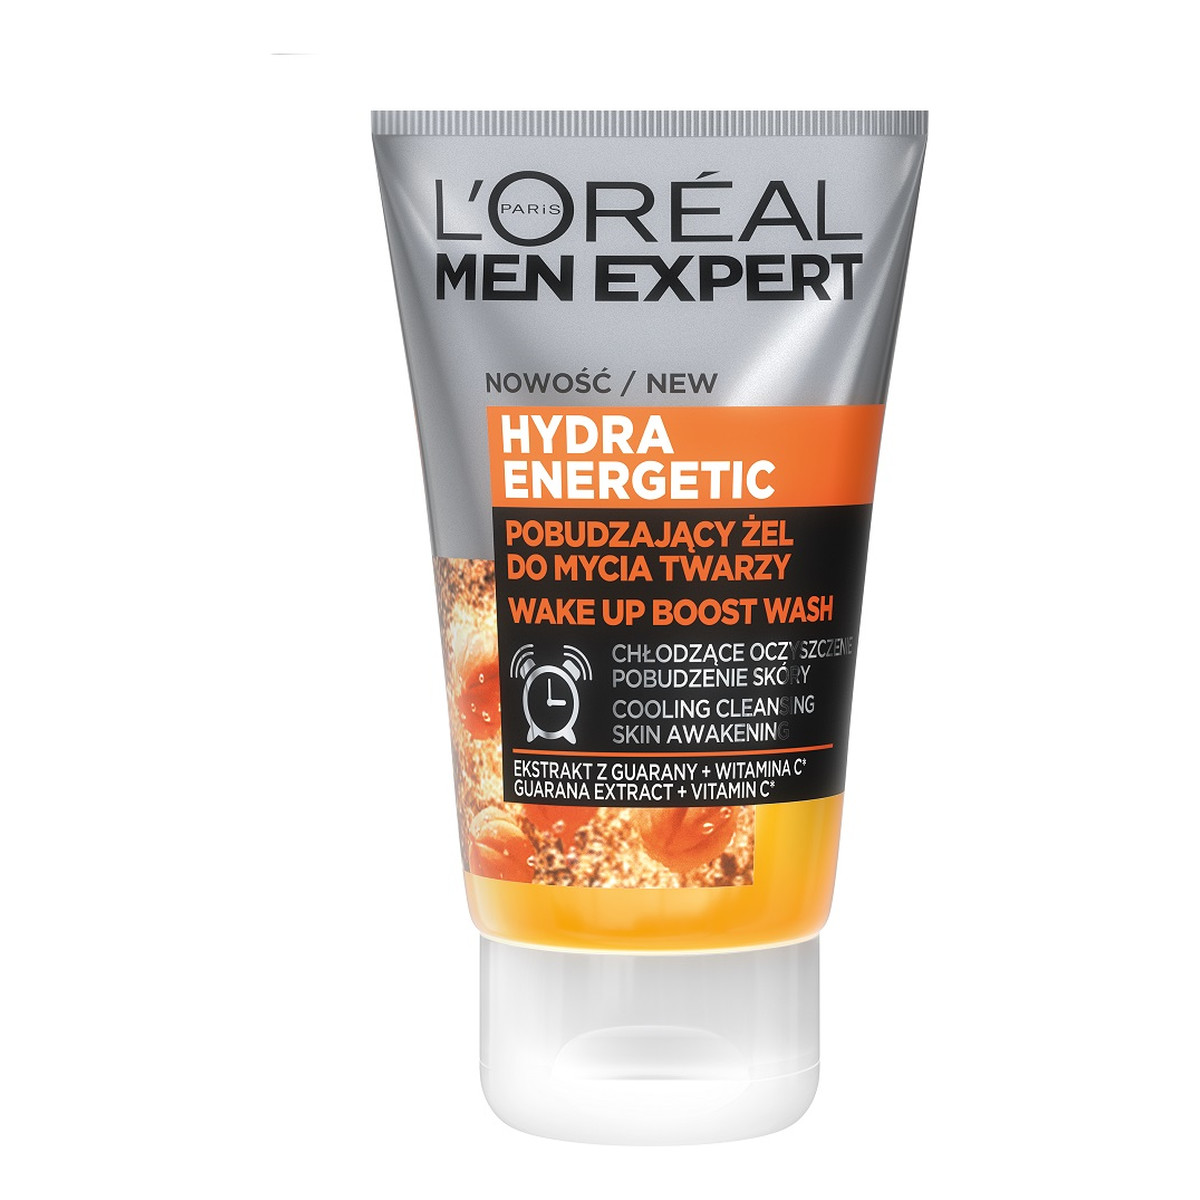 L`oreal Men Expert Hydra Energetic energetyzujący żel do mycia twarzy 100ml